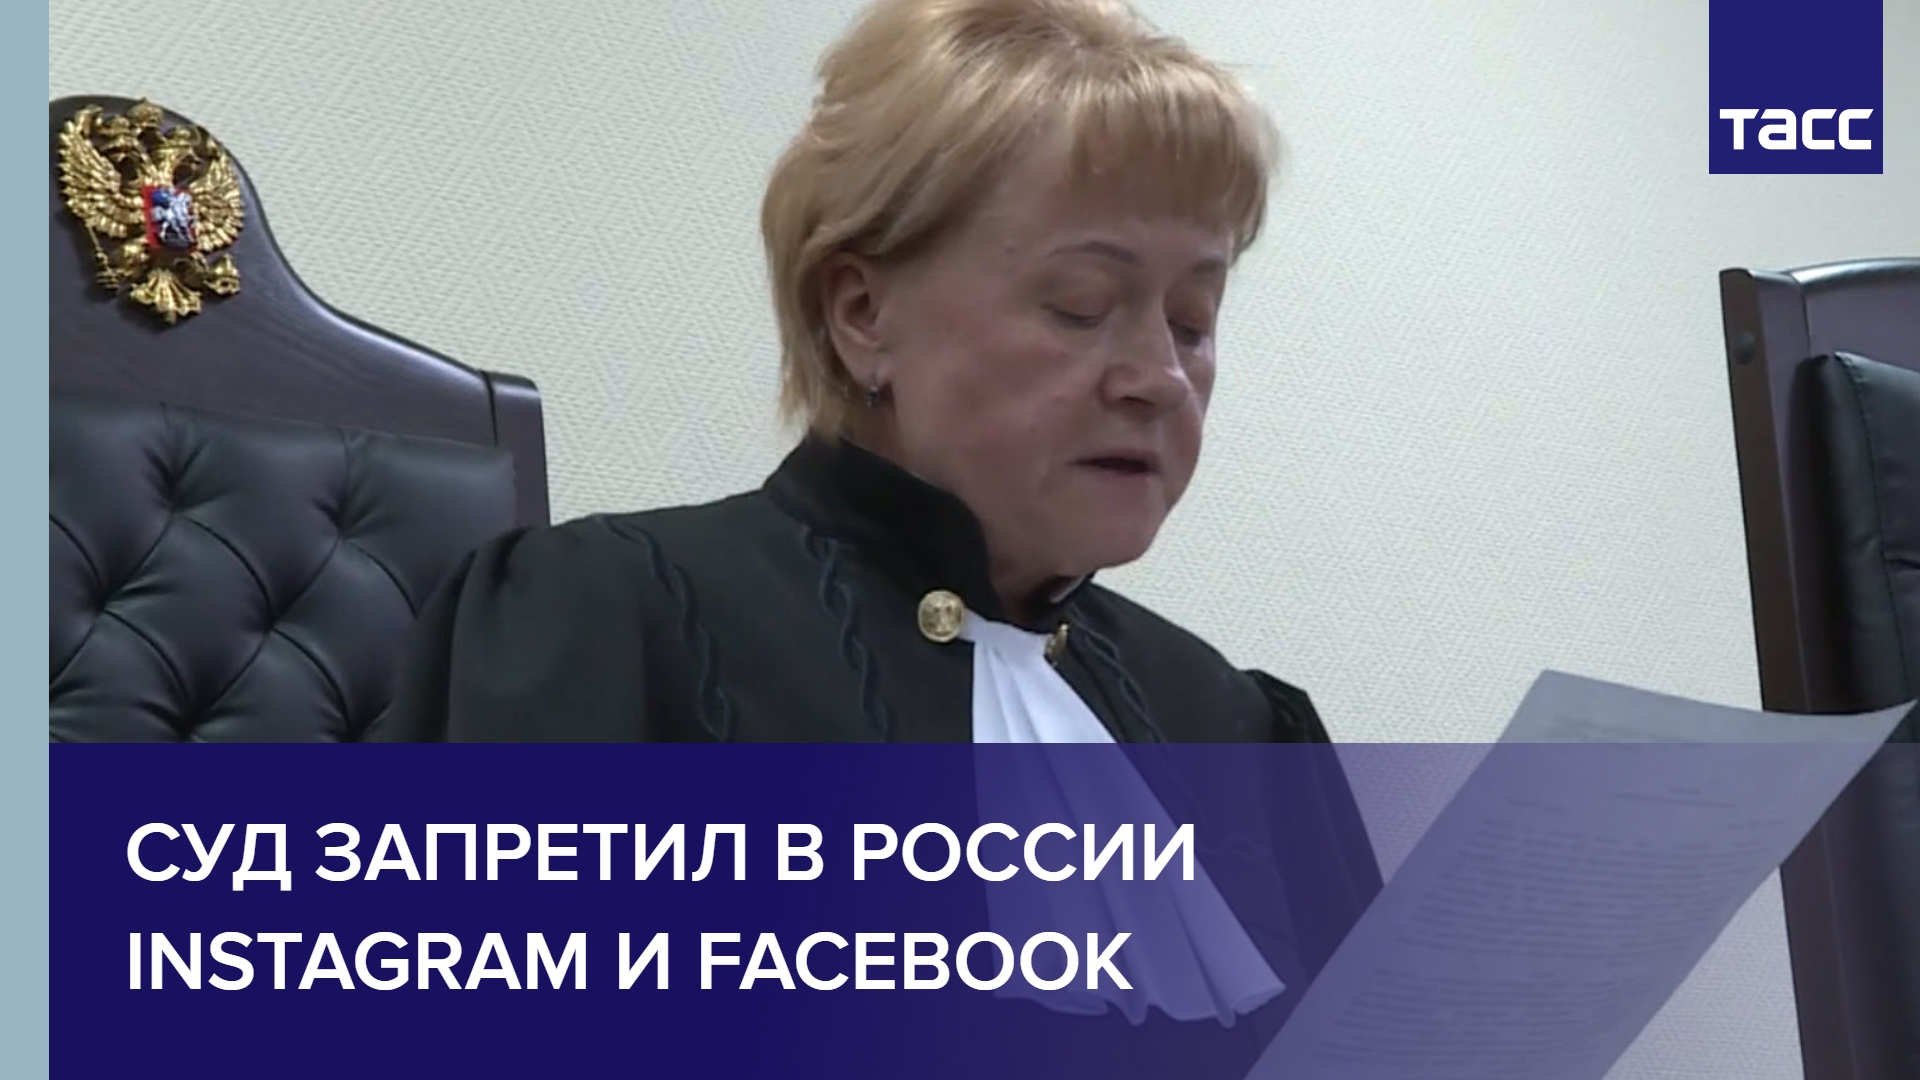 Судебный экстремизм. Суд запретил. Meta запрет в России. Суд запретил Инстаграм и Фейсбук. Фейсбук запретили в России.